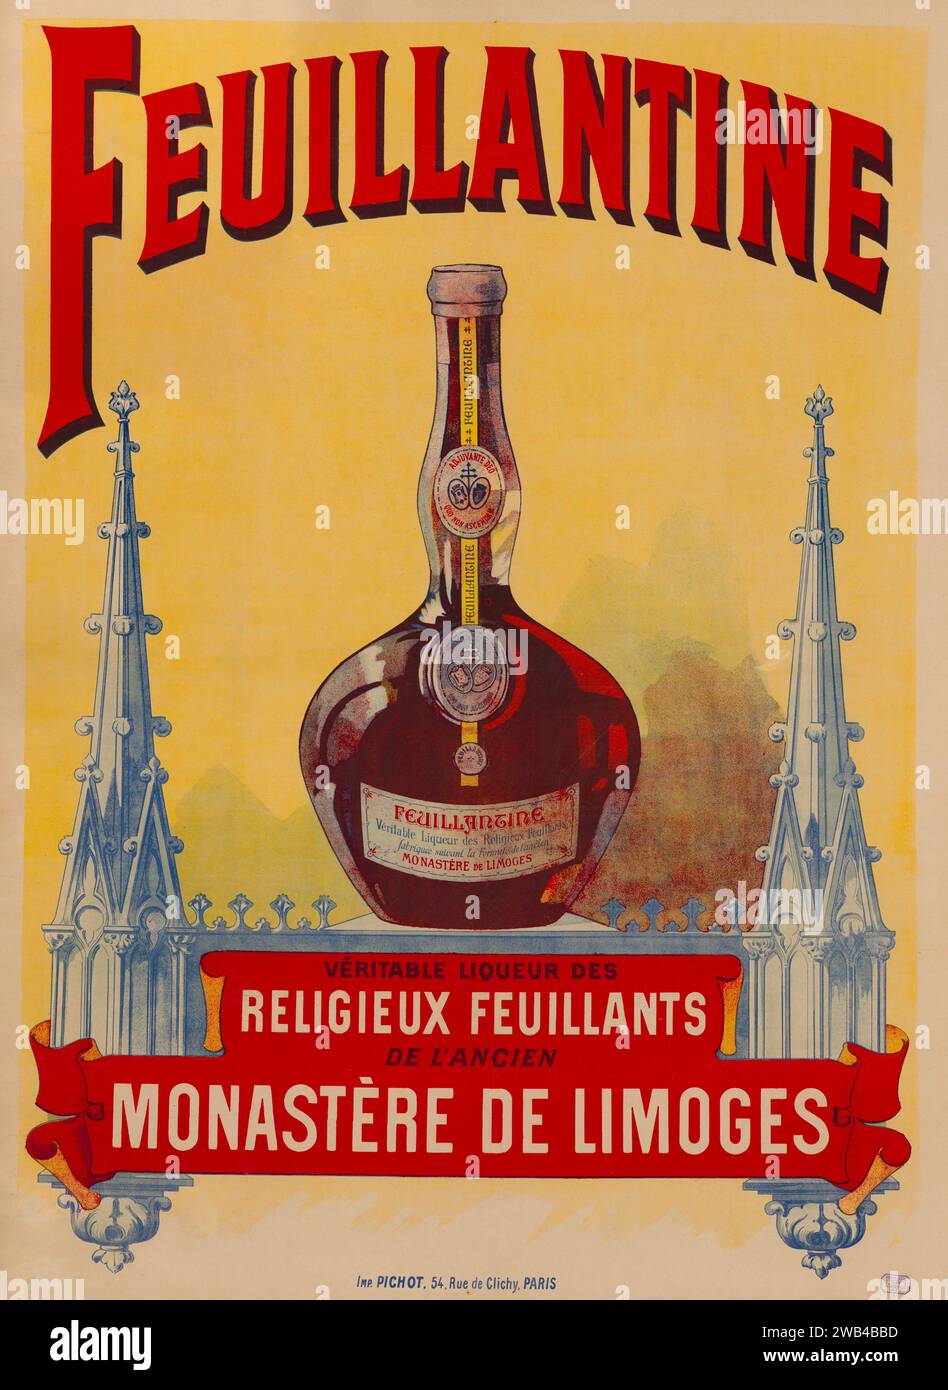 Französisches Werbeplakat für Feuillantine Likör (ein Likör, der von den feuillants Mönchen des ehemaligen Klosters Limoges hergestellt wurde). 1899 Stockfoto